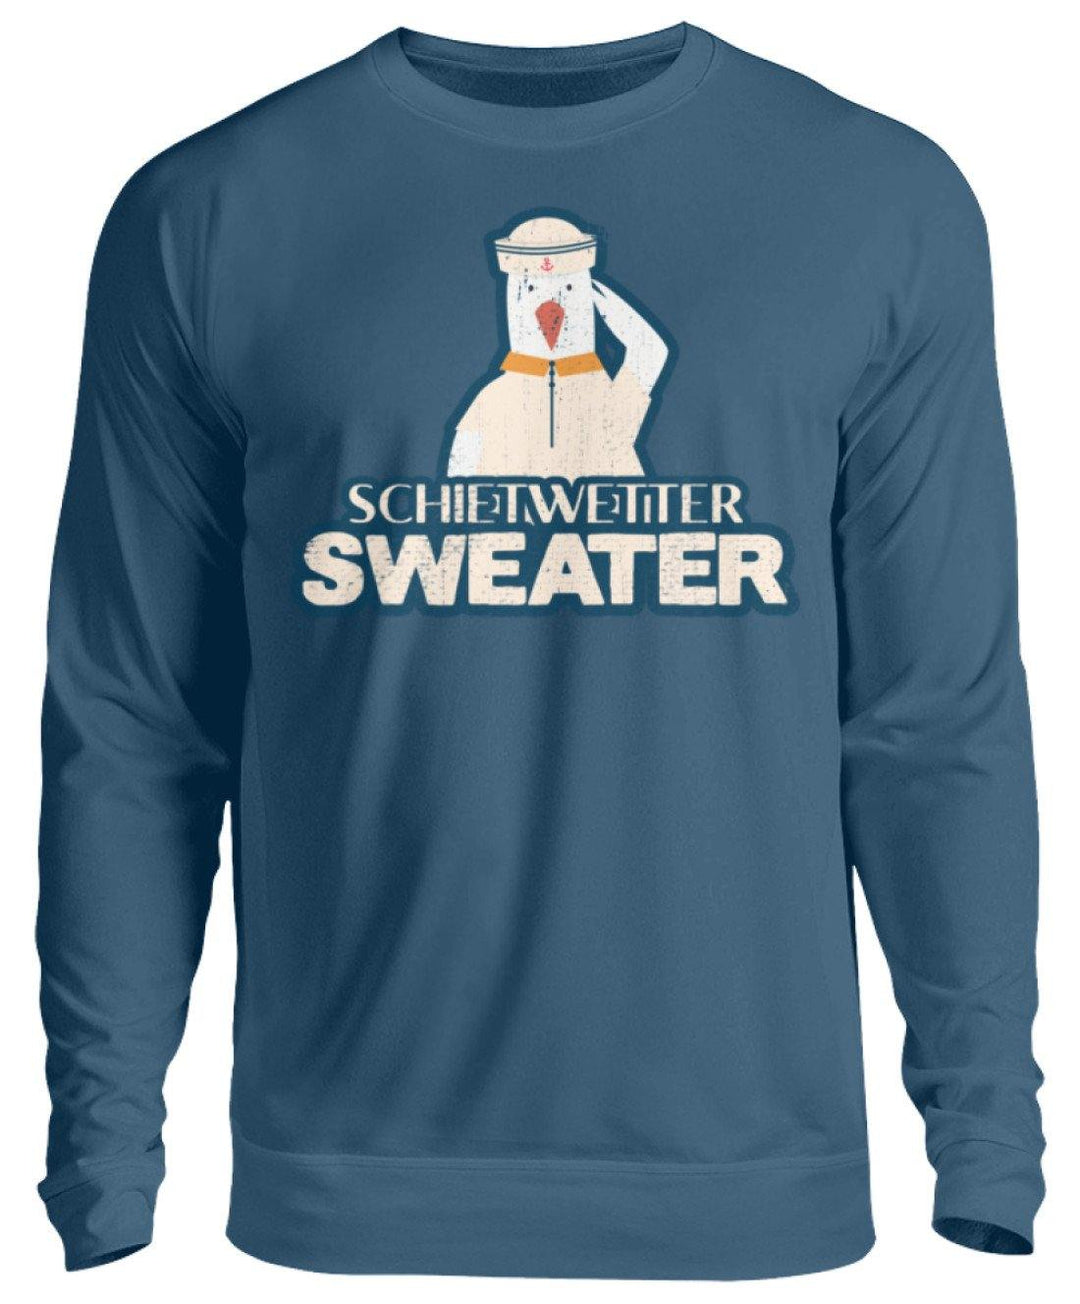 Schietwetter Sweater - Norddeutsch   - Unisex Pullover - Words on Shirts Sag es mit dem Mittelfinger Shirts Hoodies Sweatshirt Taschen Gymsack Spruch Sprüche Statement